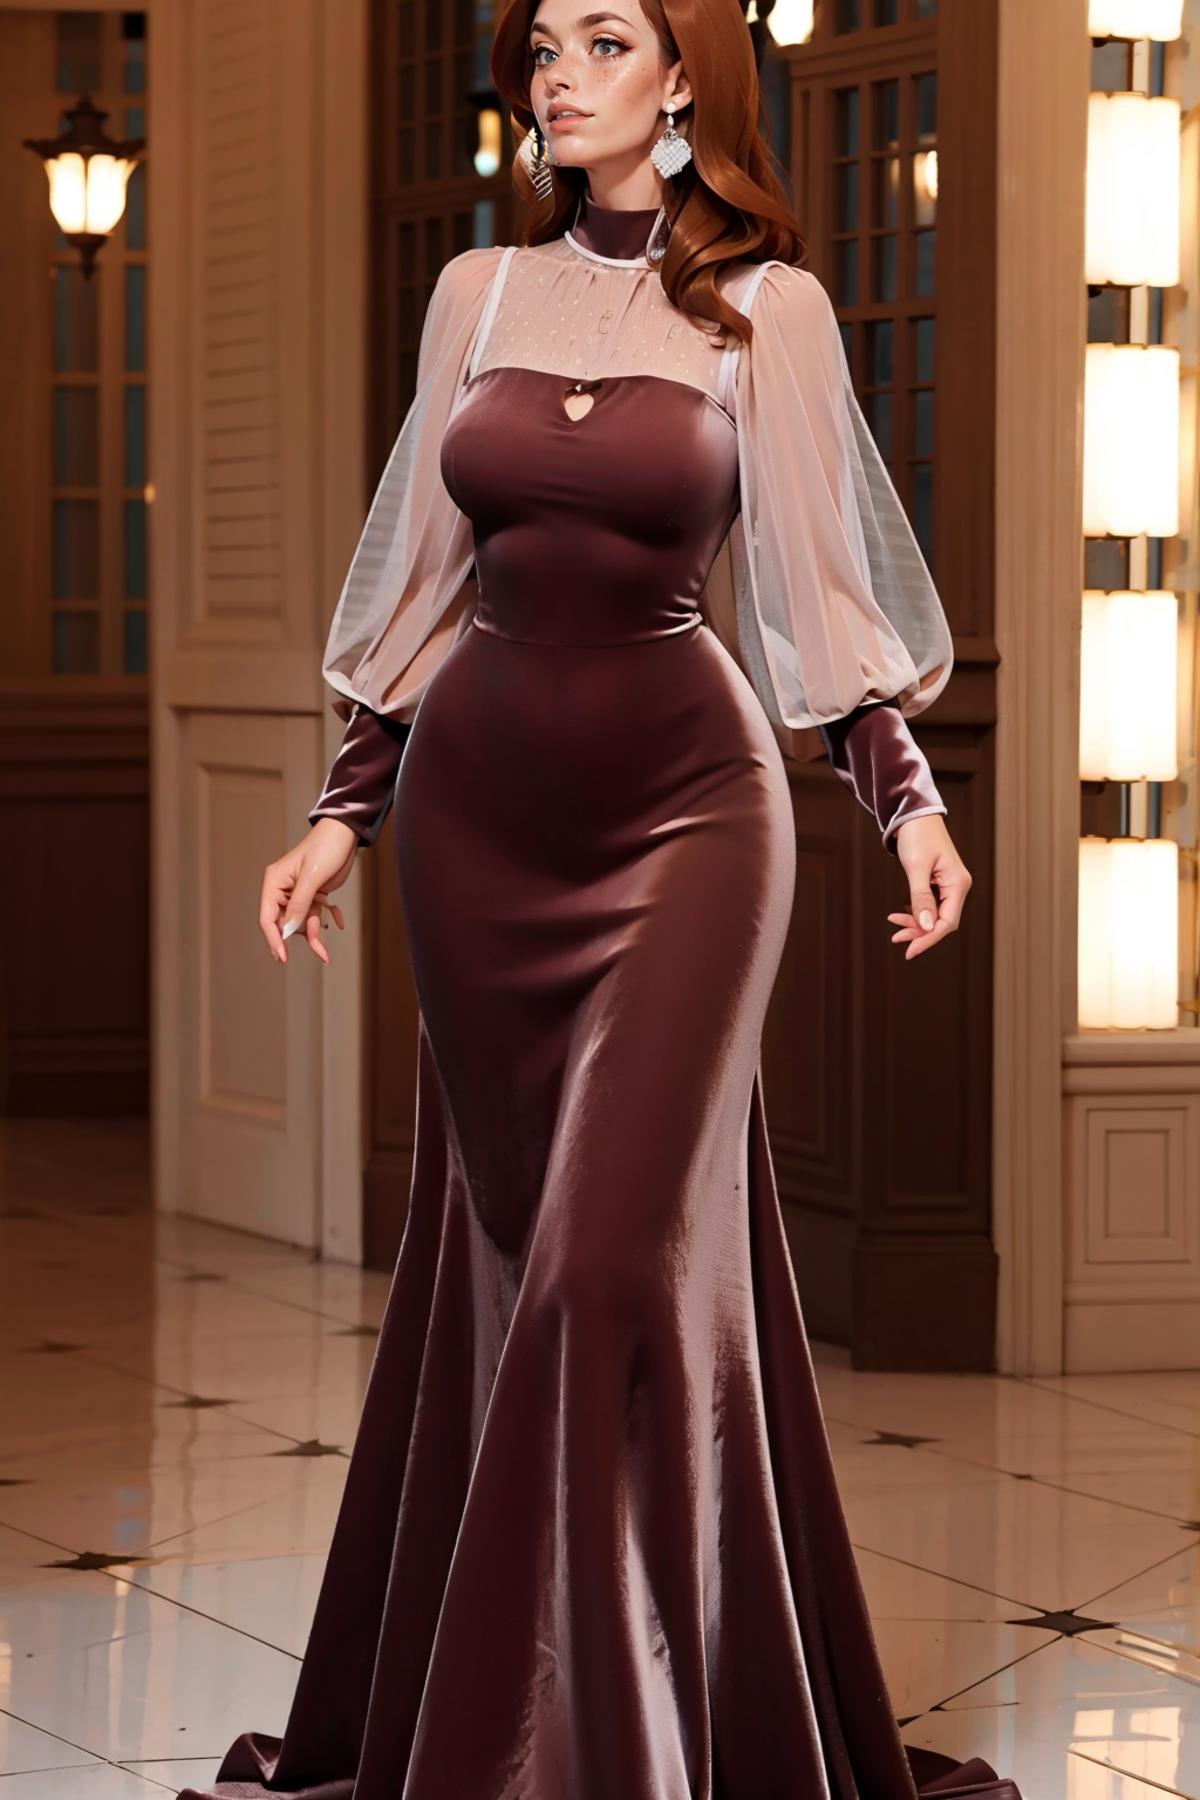 Maroon Velvet Dress image by freckledvixon